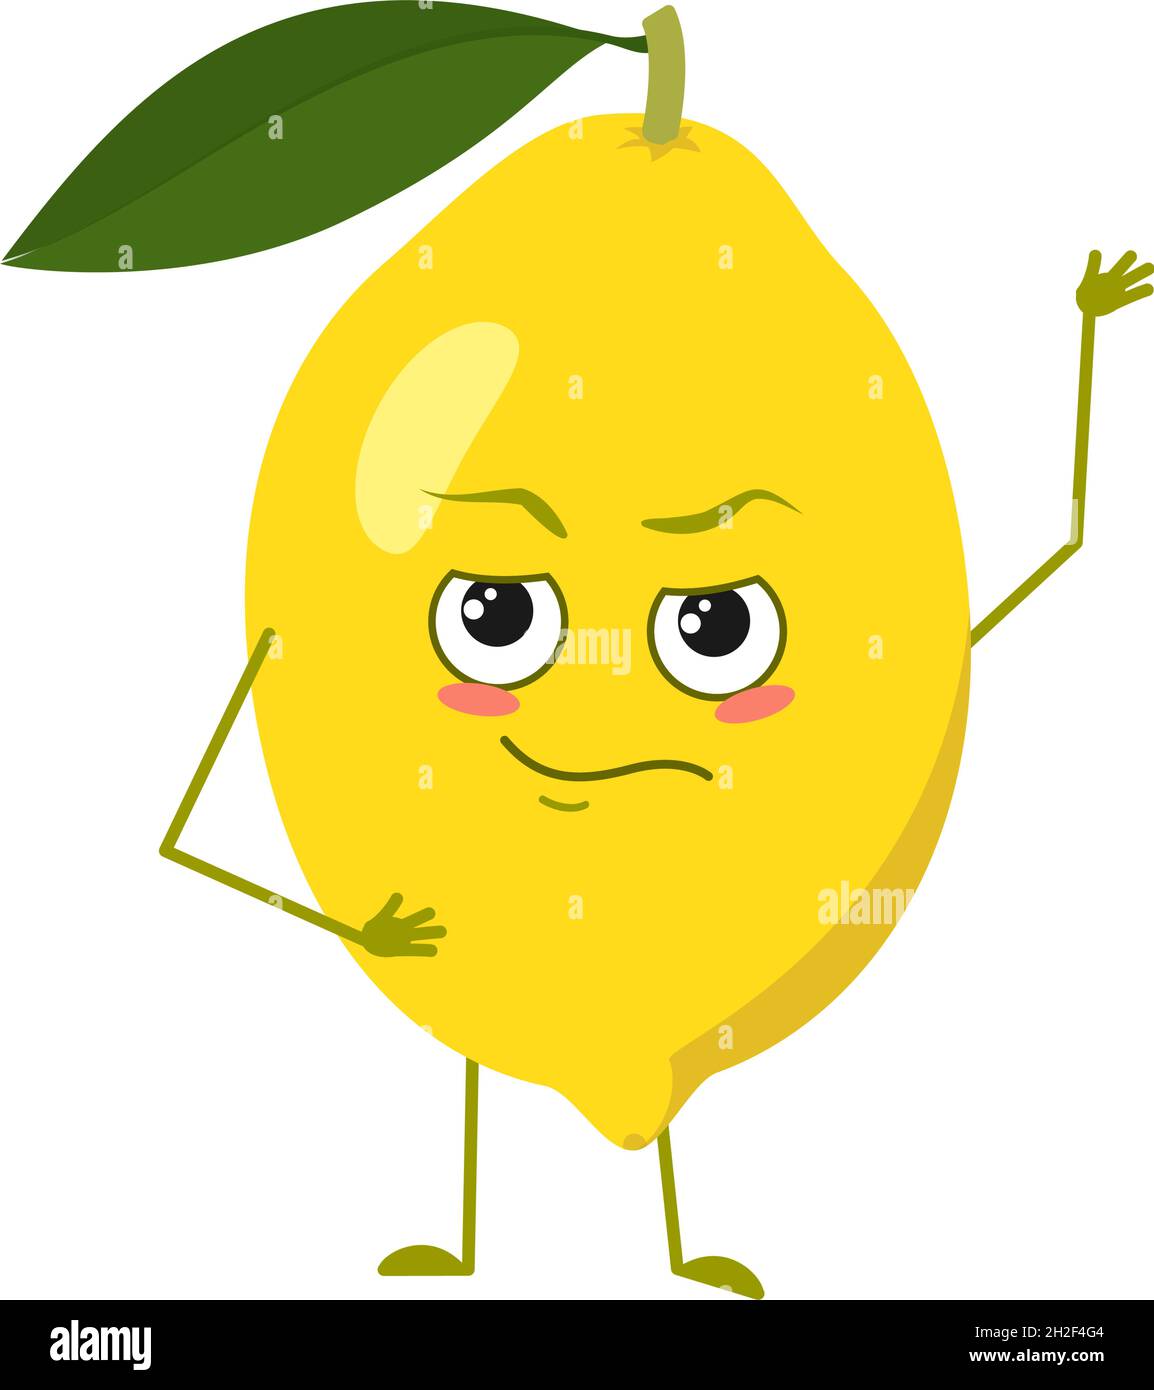 Niedliche Zitronenfiguren mit Emotionen, Gesicht, Armen und Beinen. Dekoration im Frühling oder Sommer. Der lustige oder stolze, dominierende Zitrusheld, gelbe Frucht. Vektorgrafik flach Stock Vektor